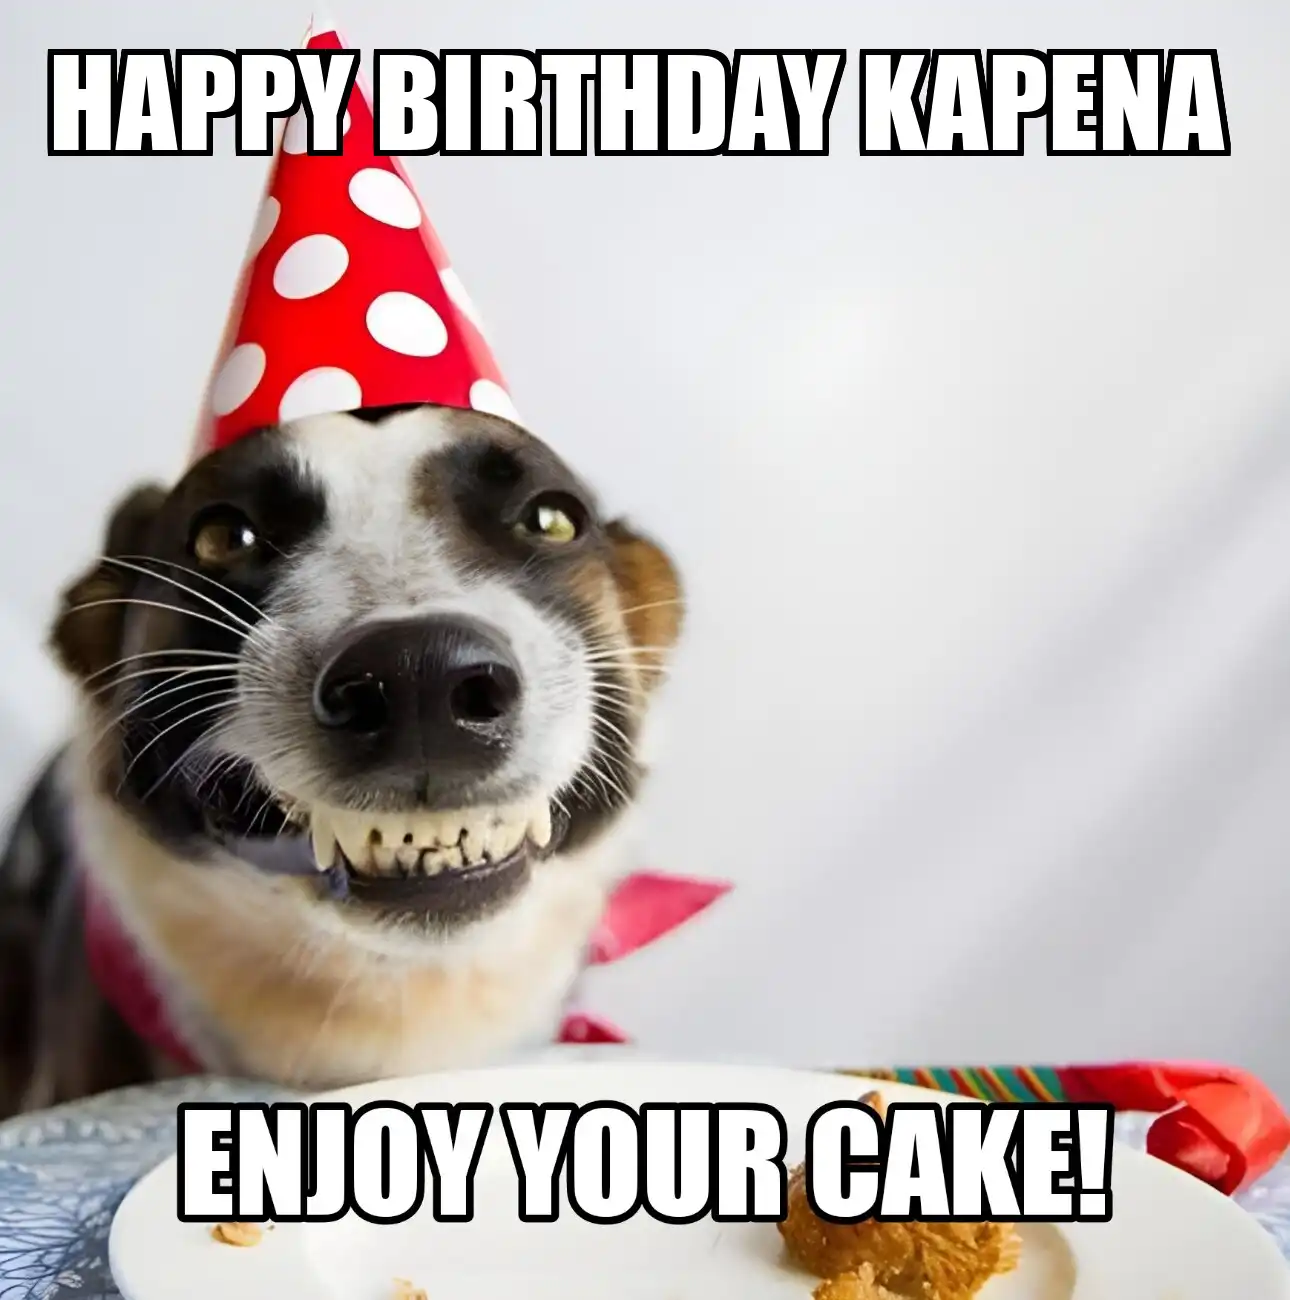 Happy Birthday Kapena Enjoy Your Cake Dog Meme